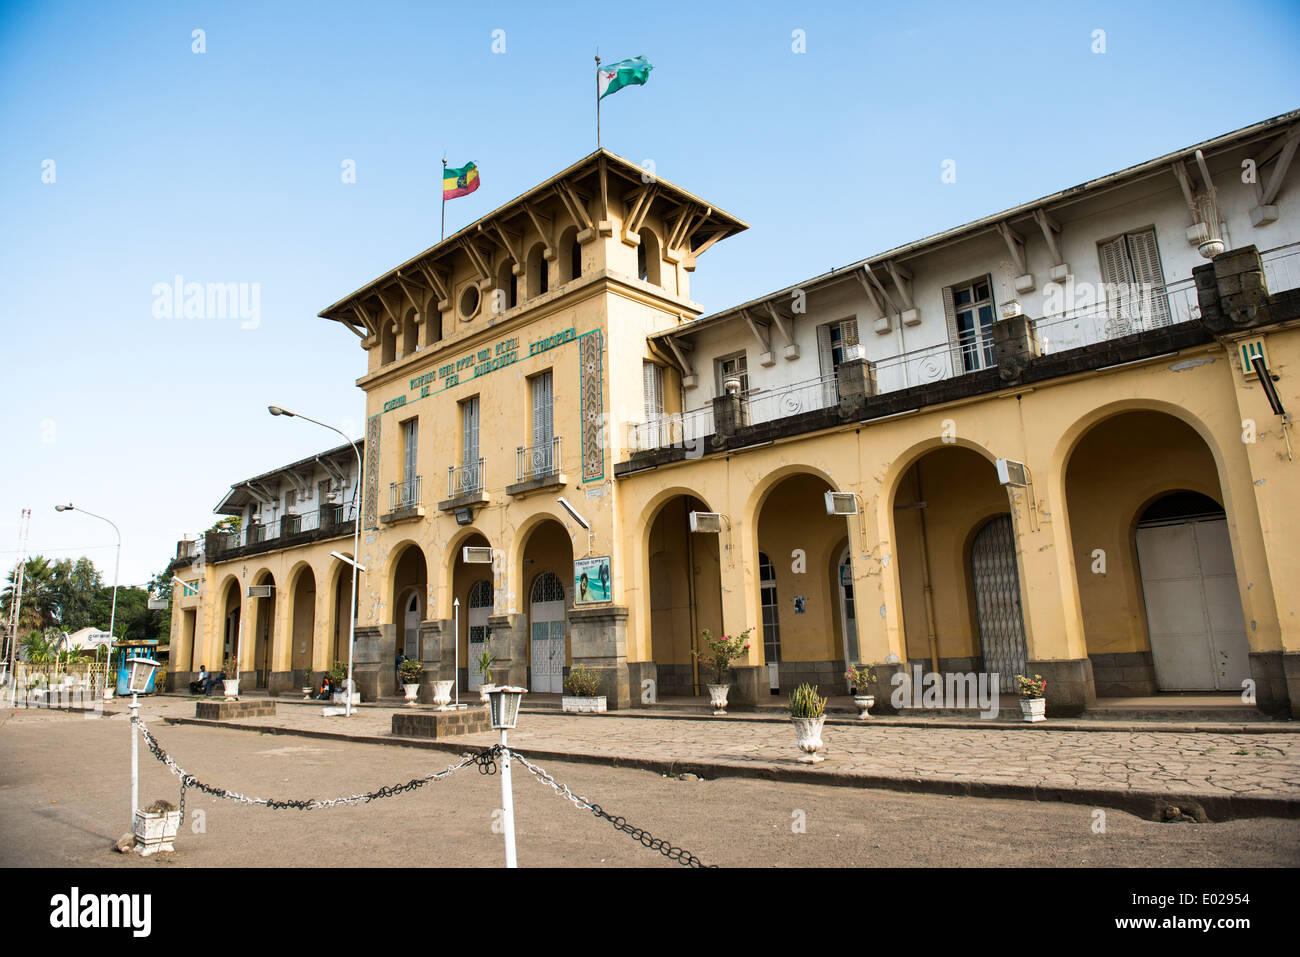 La estación de tren de Djibouti Etiopía, en Addis Abeba. Foto de stock